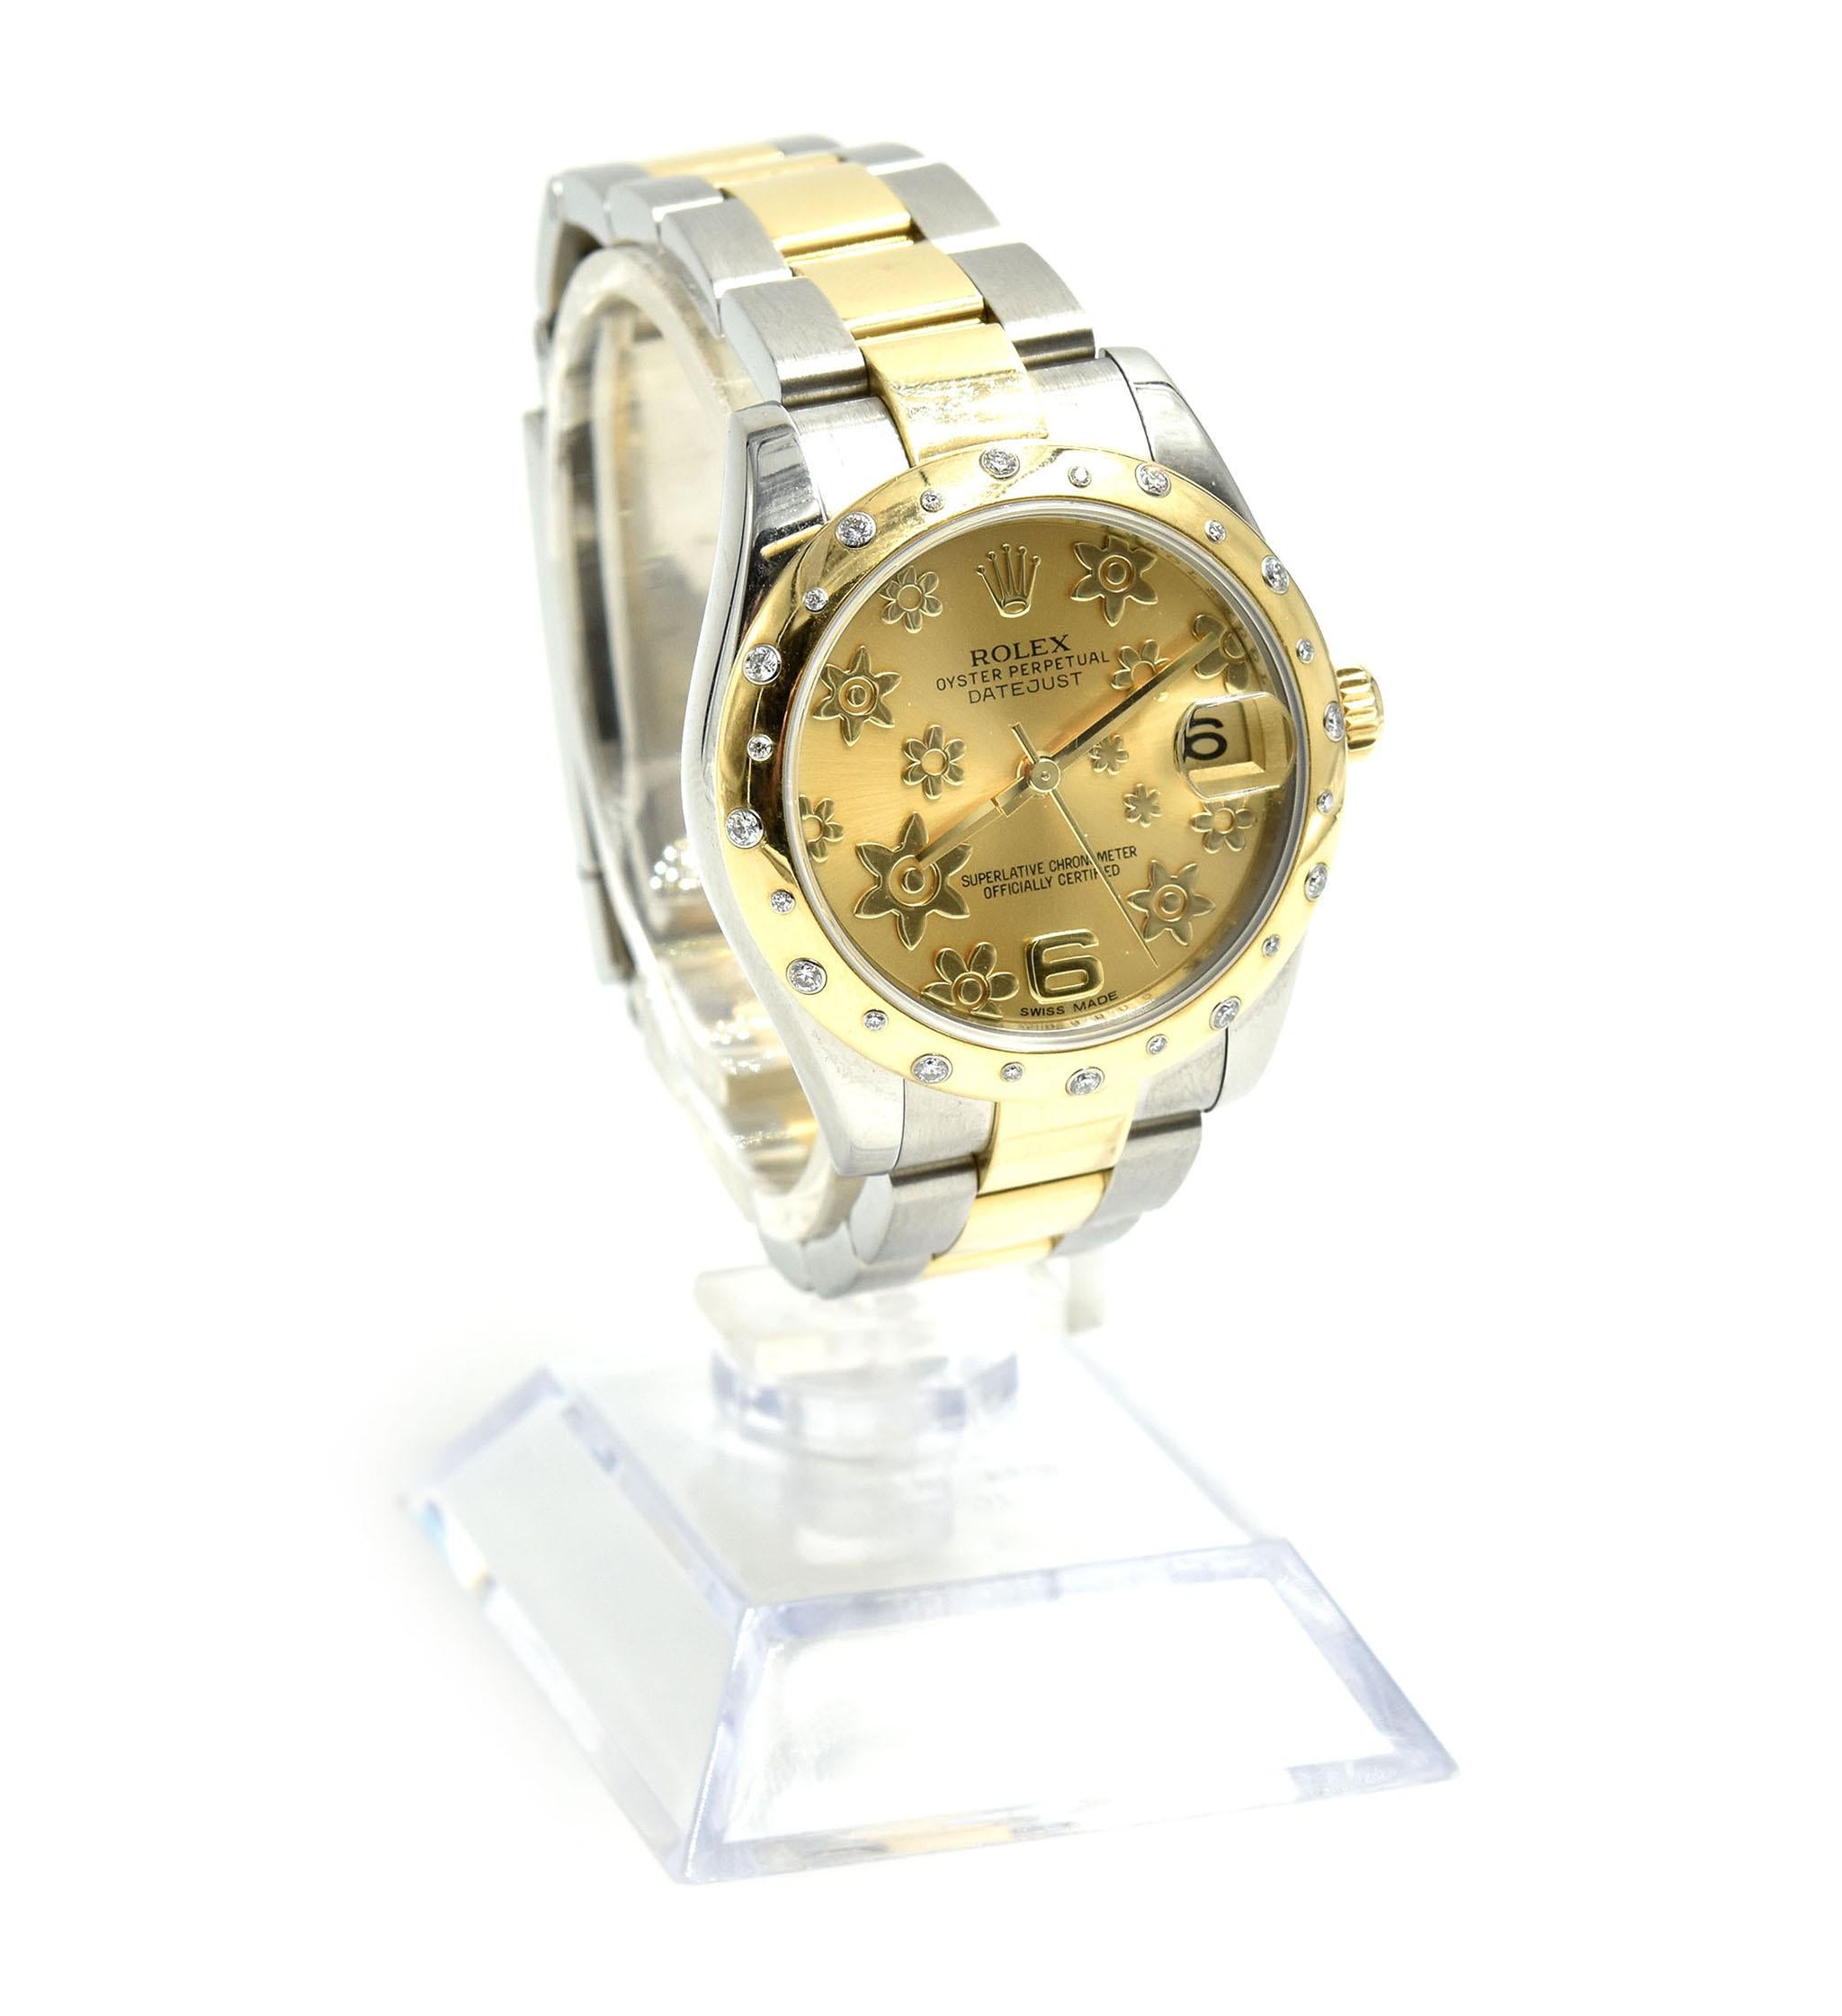 Rolex Datejust Midsize with Diamond Bezel Two-Tone 18 Karat Gold Watch 178343 1